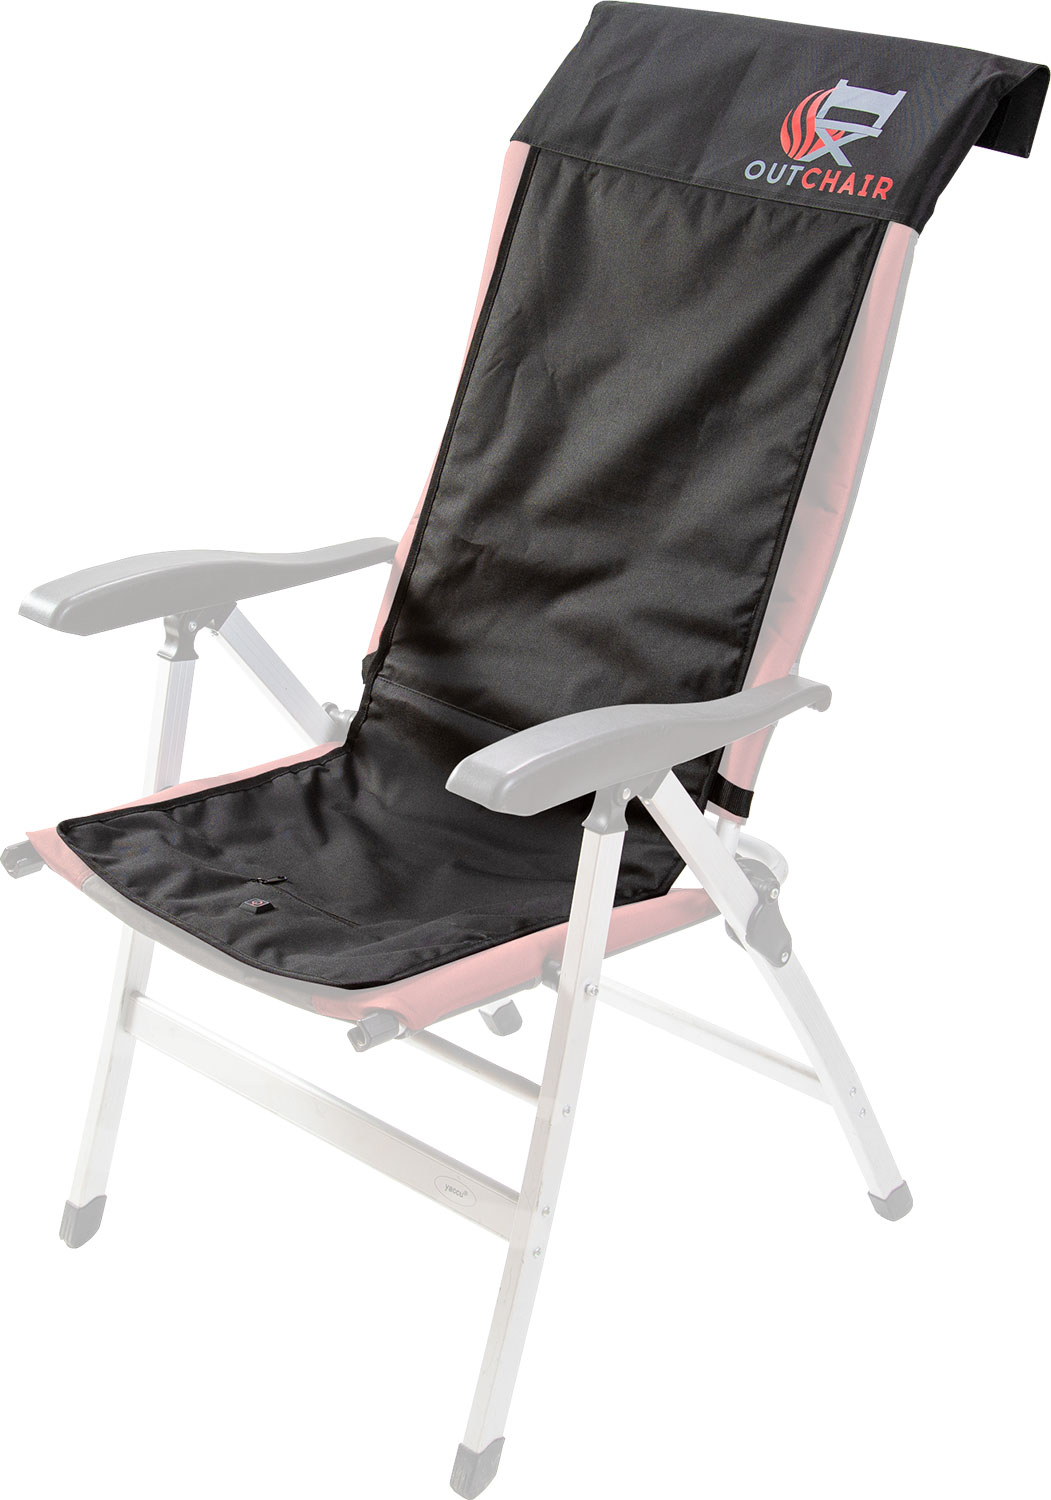 Outchair Polsterauflage Seat Cover, universell einsetzbar, beheizbare  Sitzauflage, 120 x 40 cm, schwarz